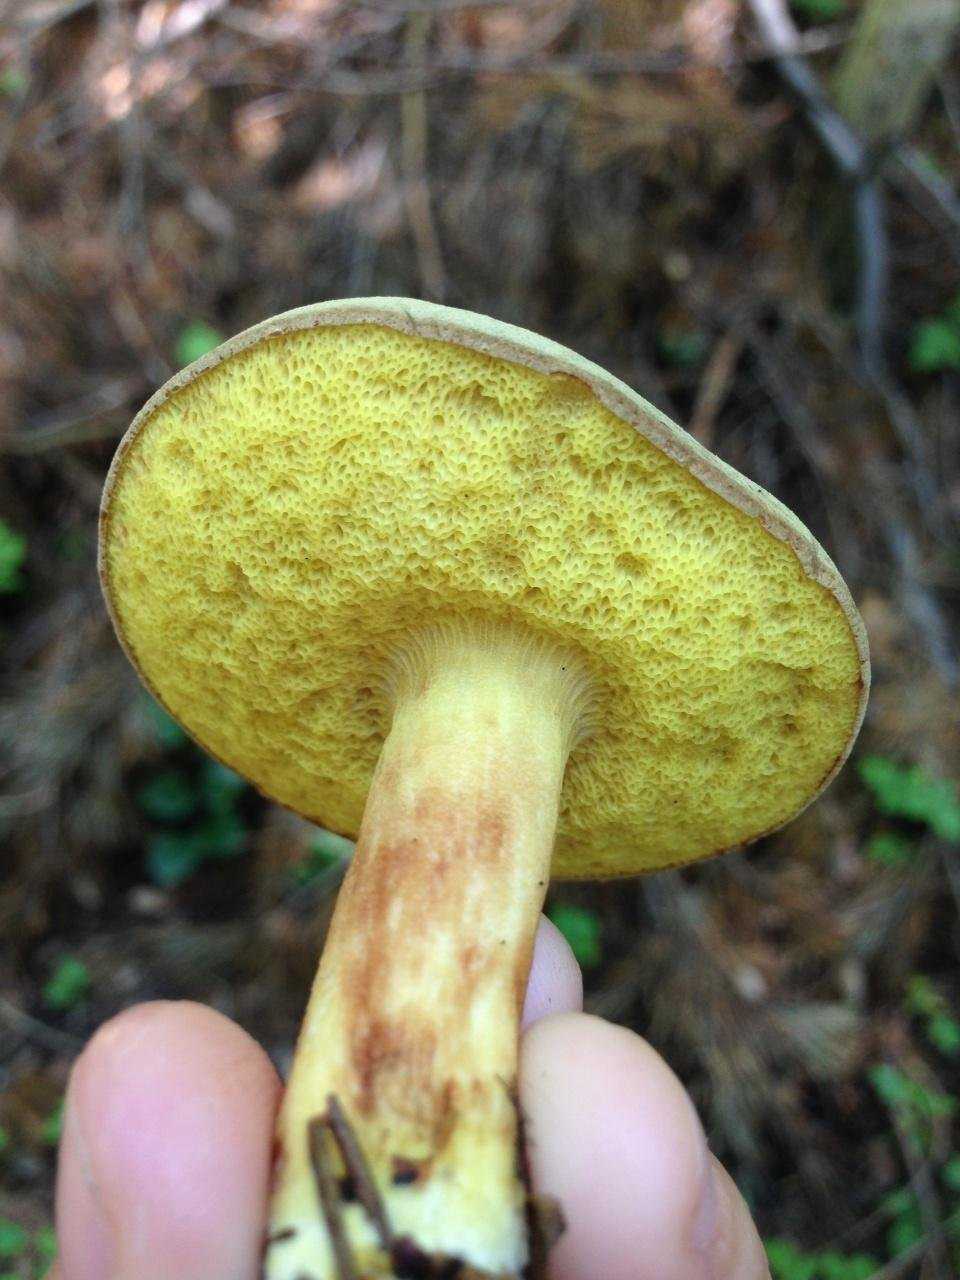 Съедобные грибы моховики: где растут, полезные свойства